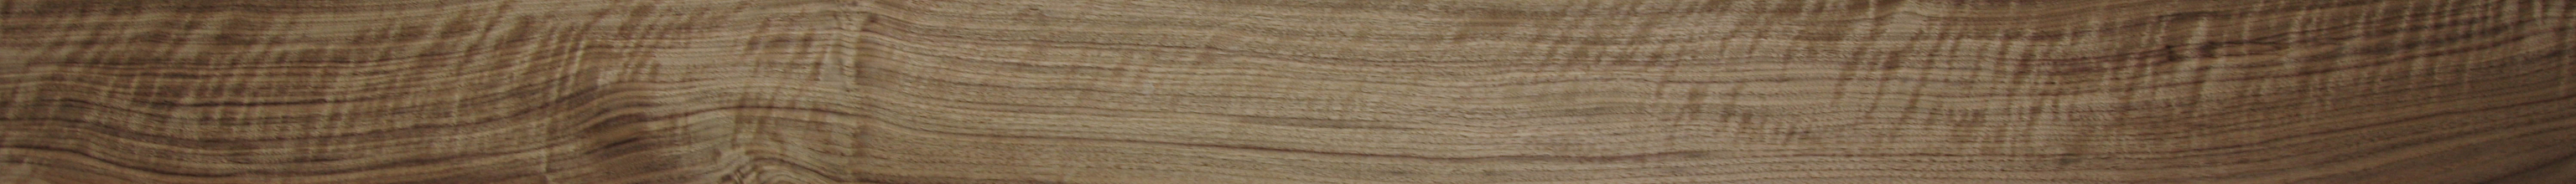 0,6mm Nussbaum amerikanisch (Riegel) Furnier 12,77m² B 32 285 14